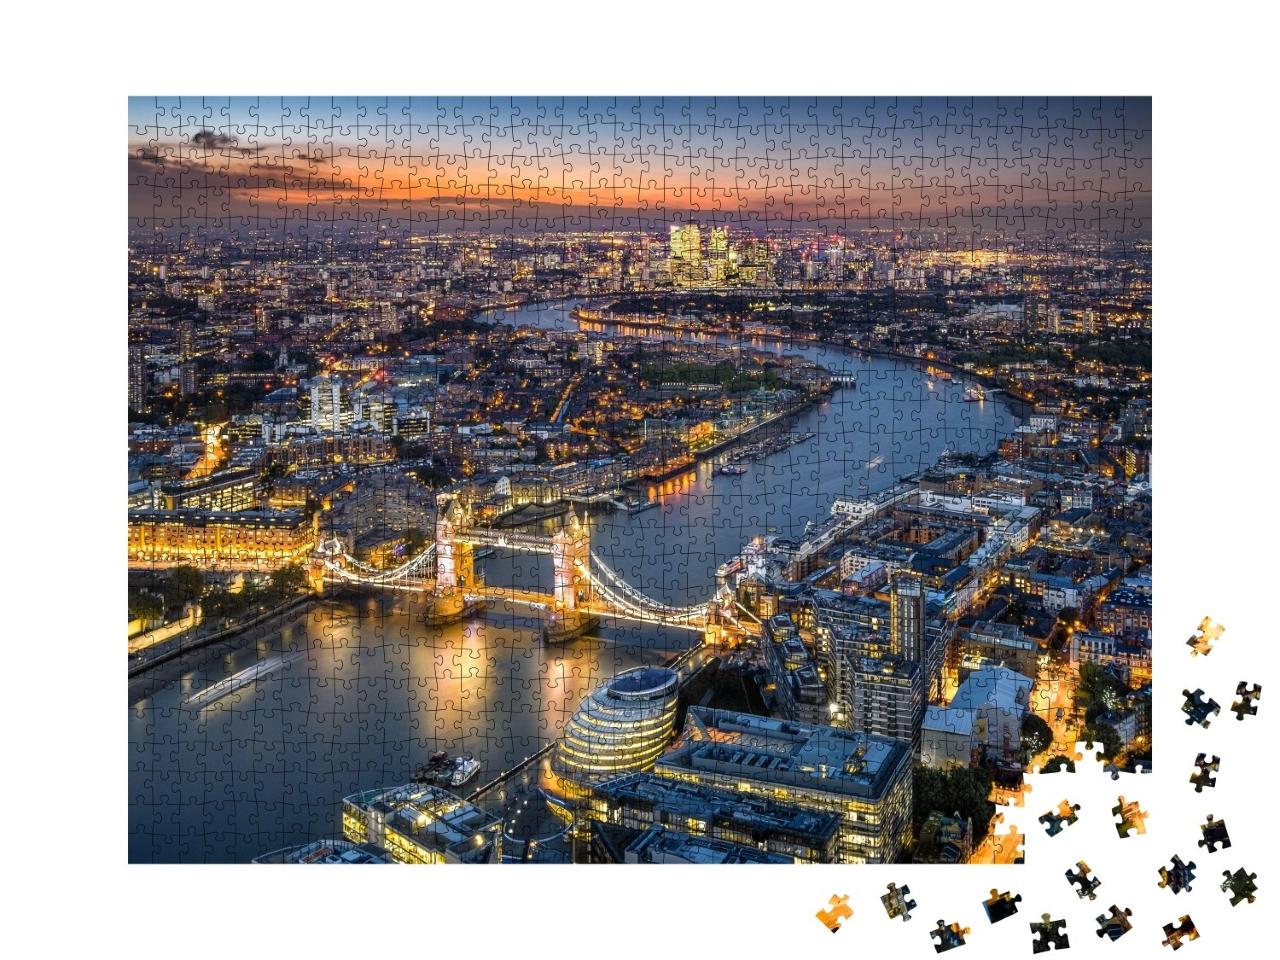 Puzzle de 1000 pièces « Skyline de Londres avec Tower Bridge au crépuscule »